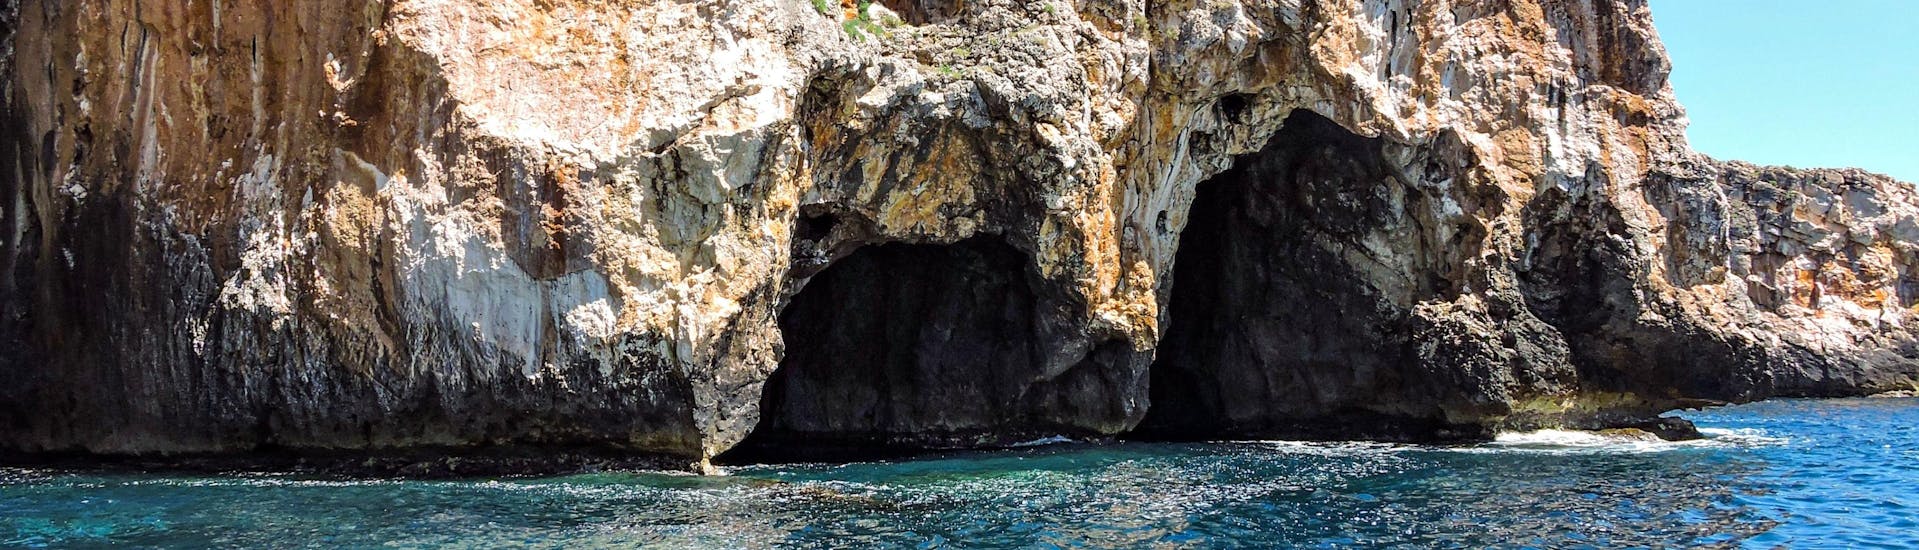 Blick auf die Grotte Tre Porte, die man von Santa Maria di Leuca aus mit einem Boot erreichen kann.